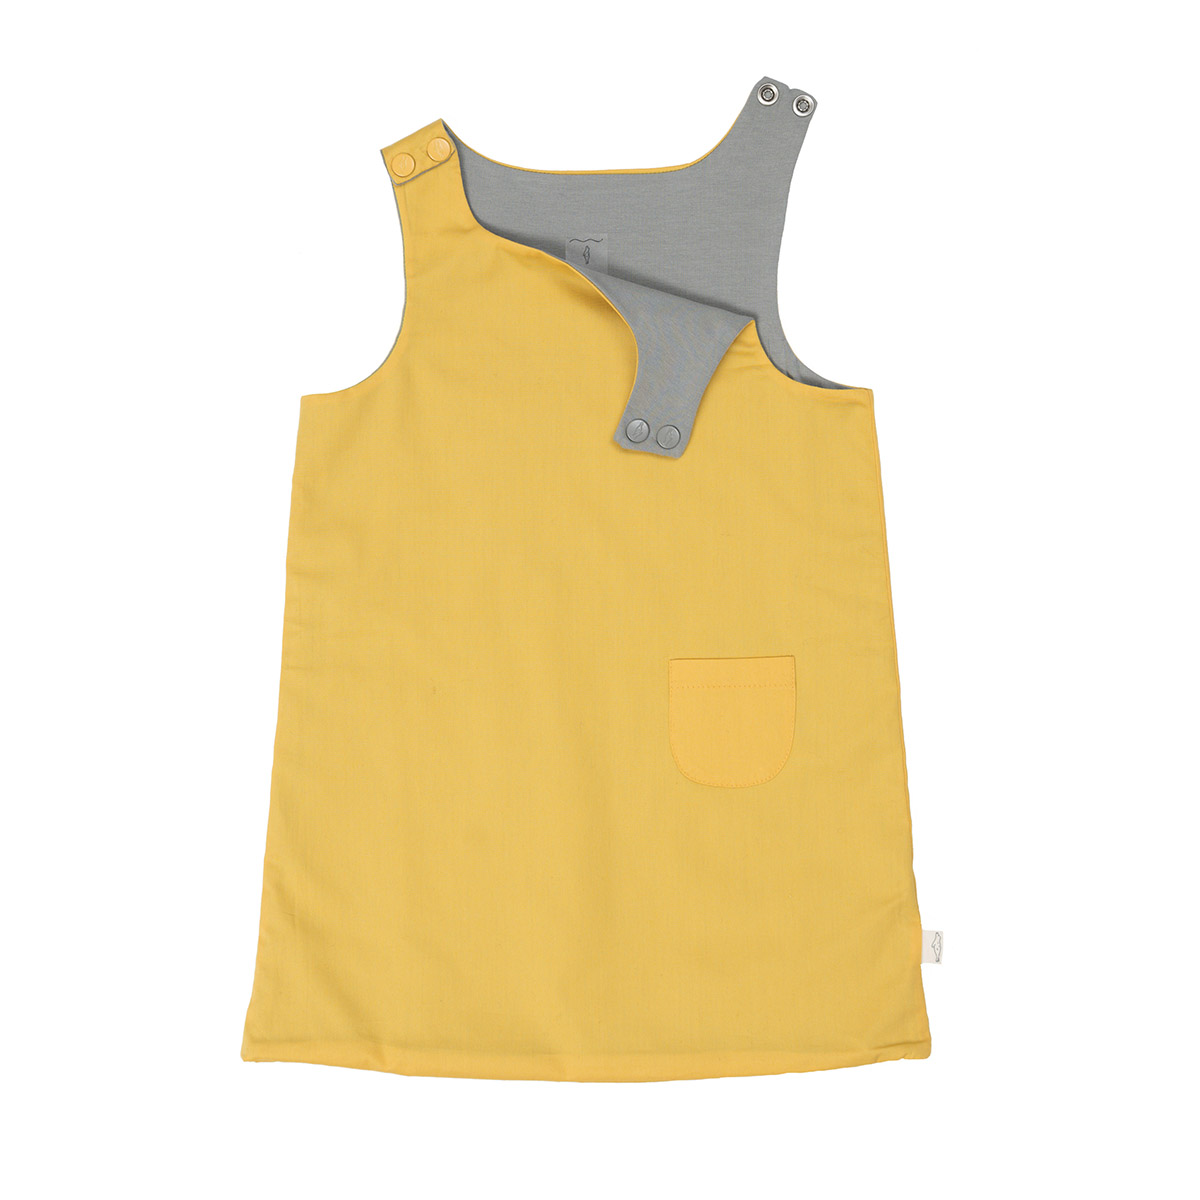 Sarı - Gri Çift Taraflı Askılı Bebek Elbise